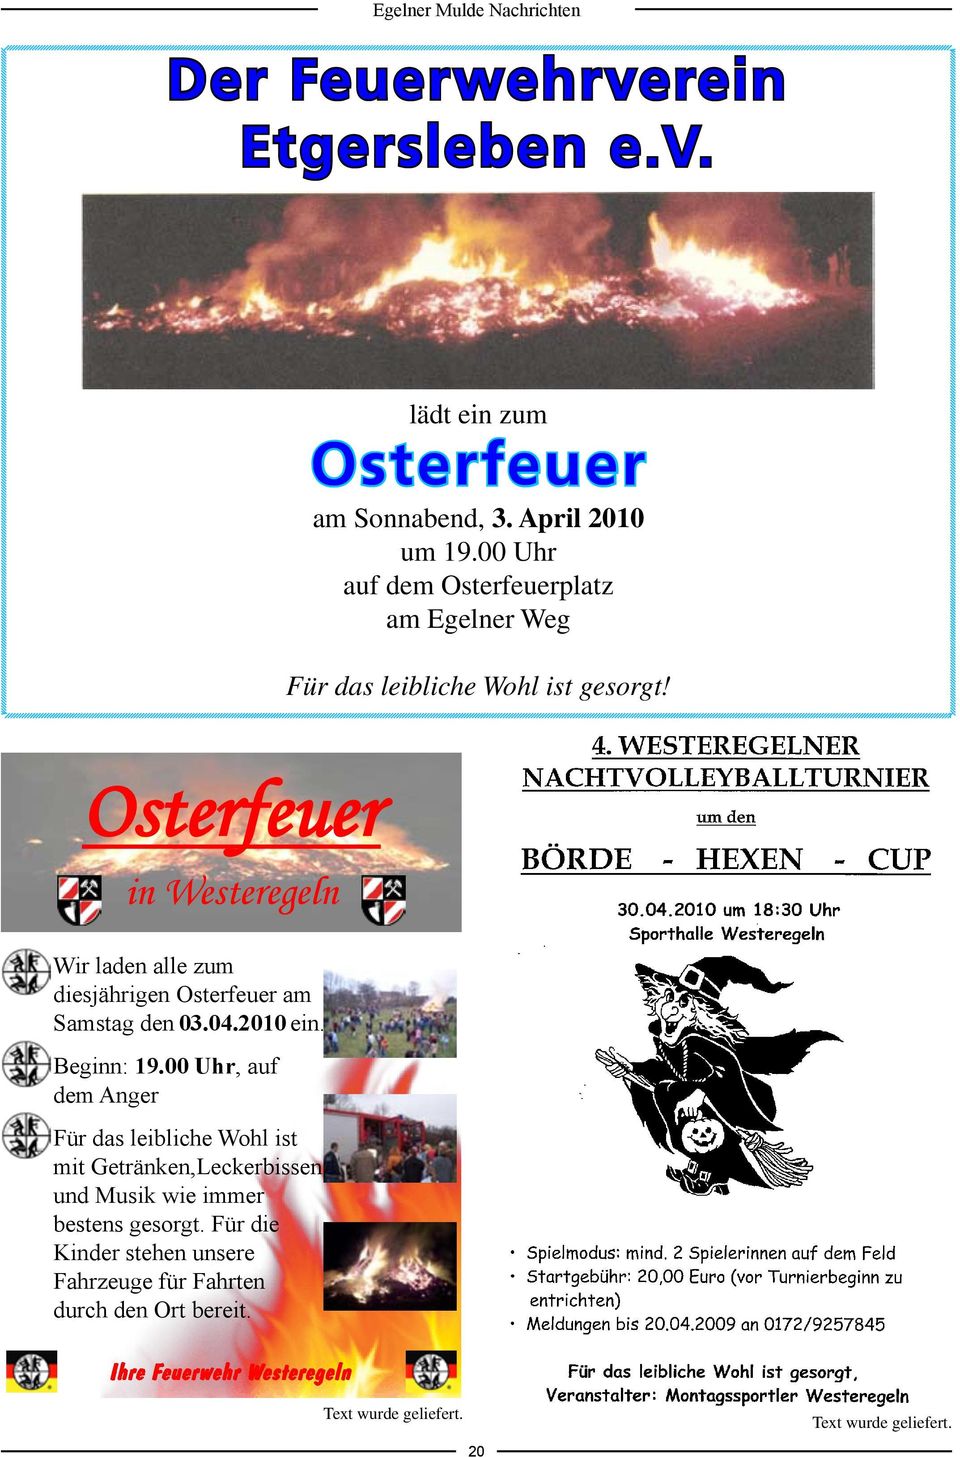 Osterfeuer in Westeregeln Wir laden alle zum diesjährigen Osterfeuer am Samstag den 03.04.2010 ein. Beginn: 19.